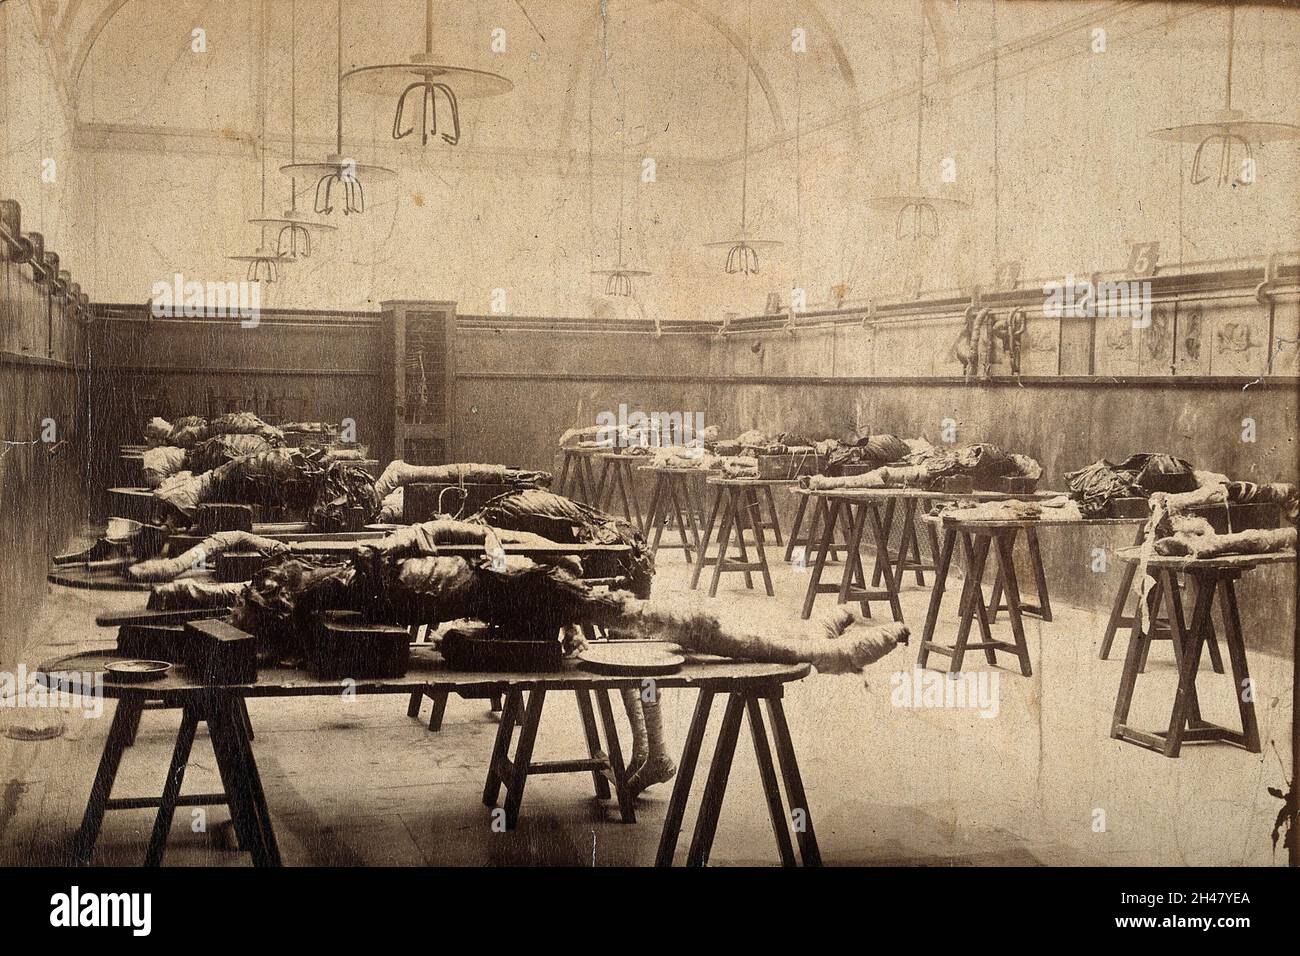 L'interno di una sala dissezione ospedale a Londra, con linee di cadaveri su panchine. Fotografia. Foto Stock